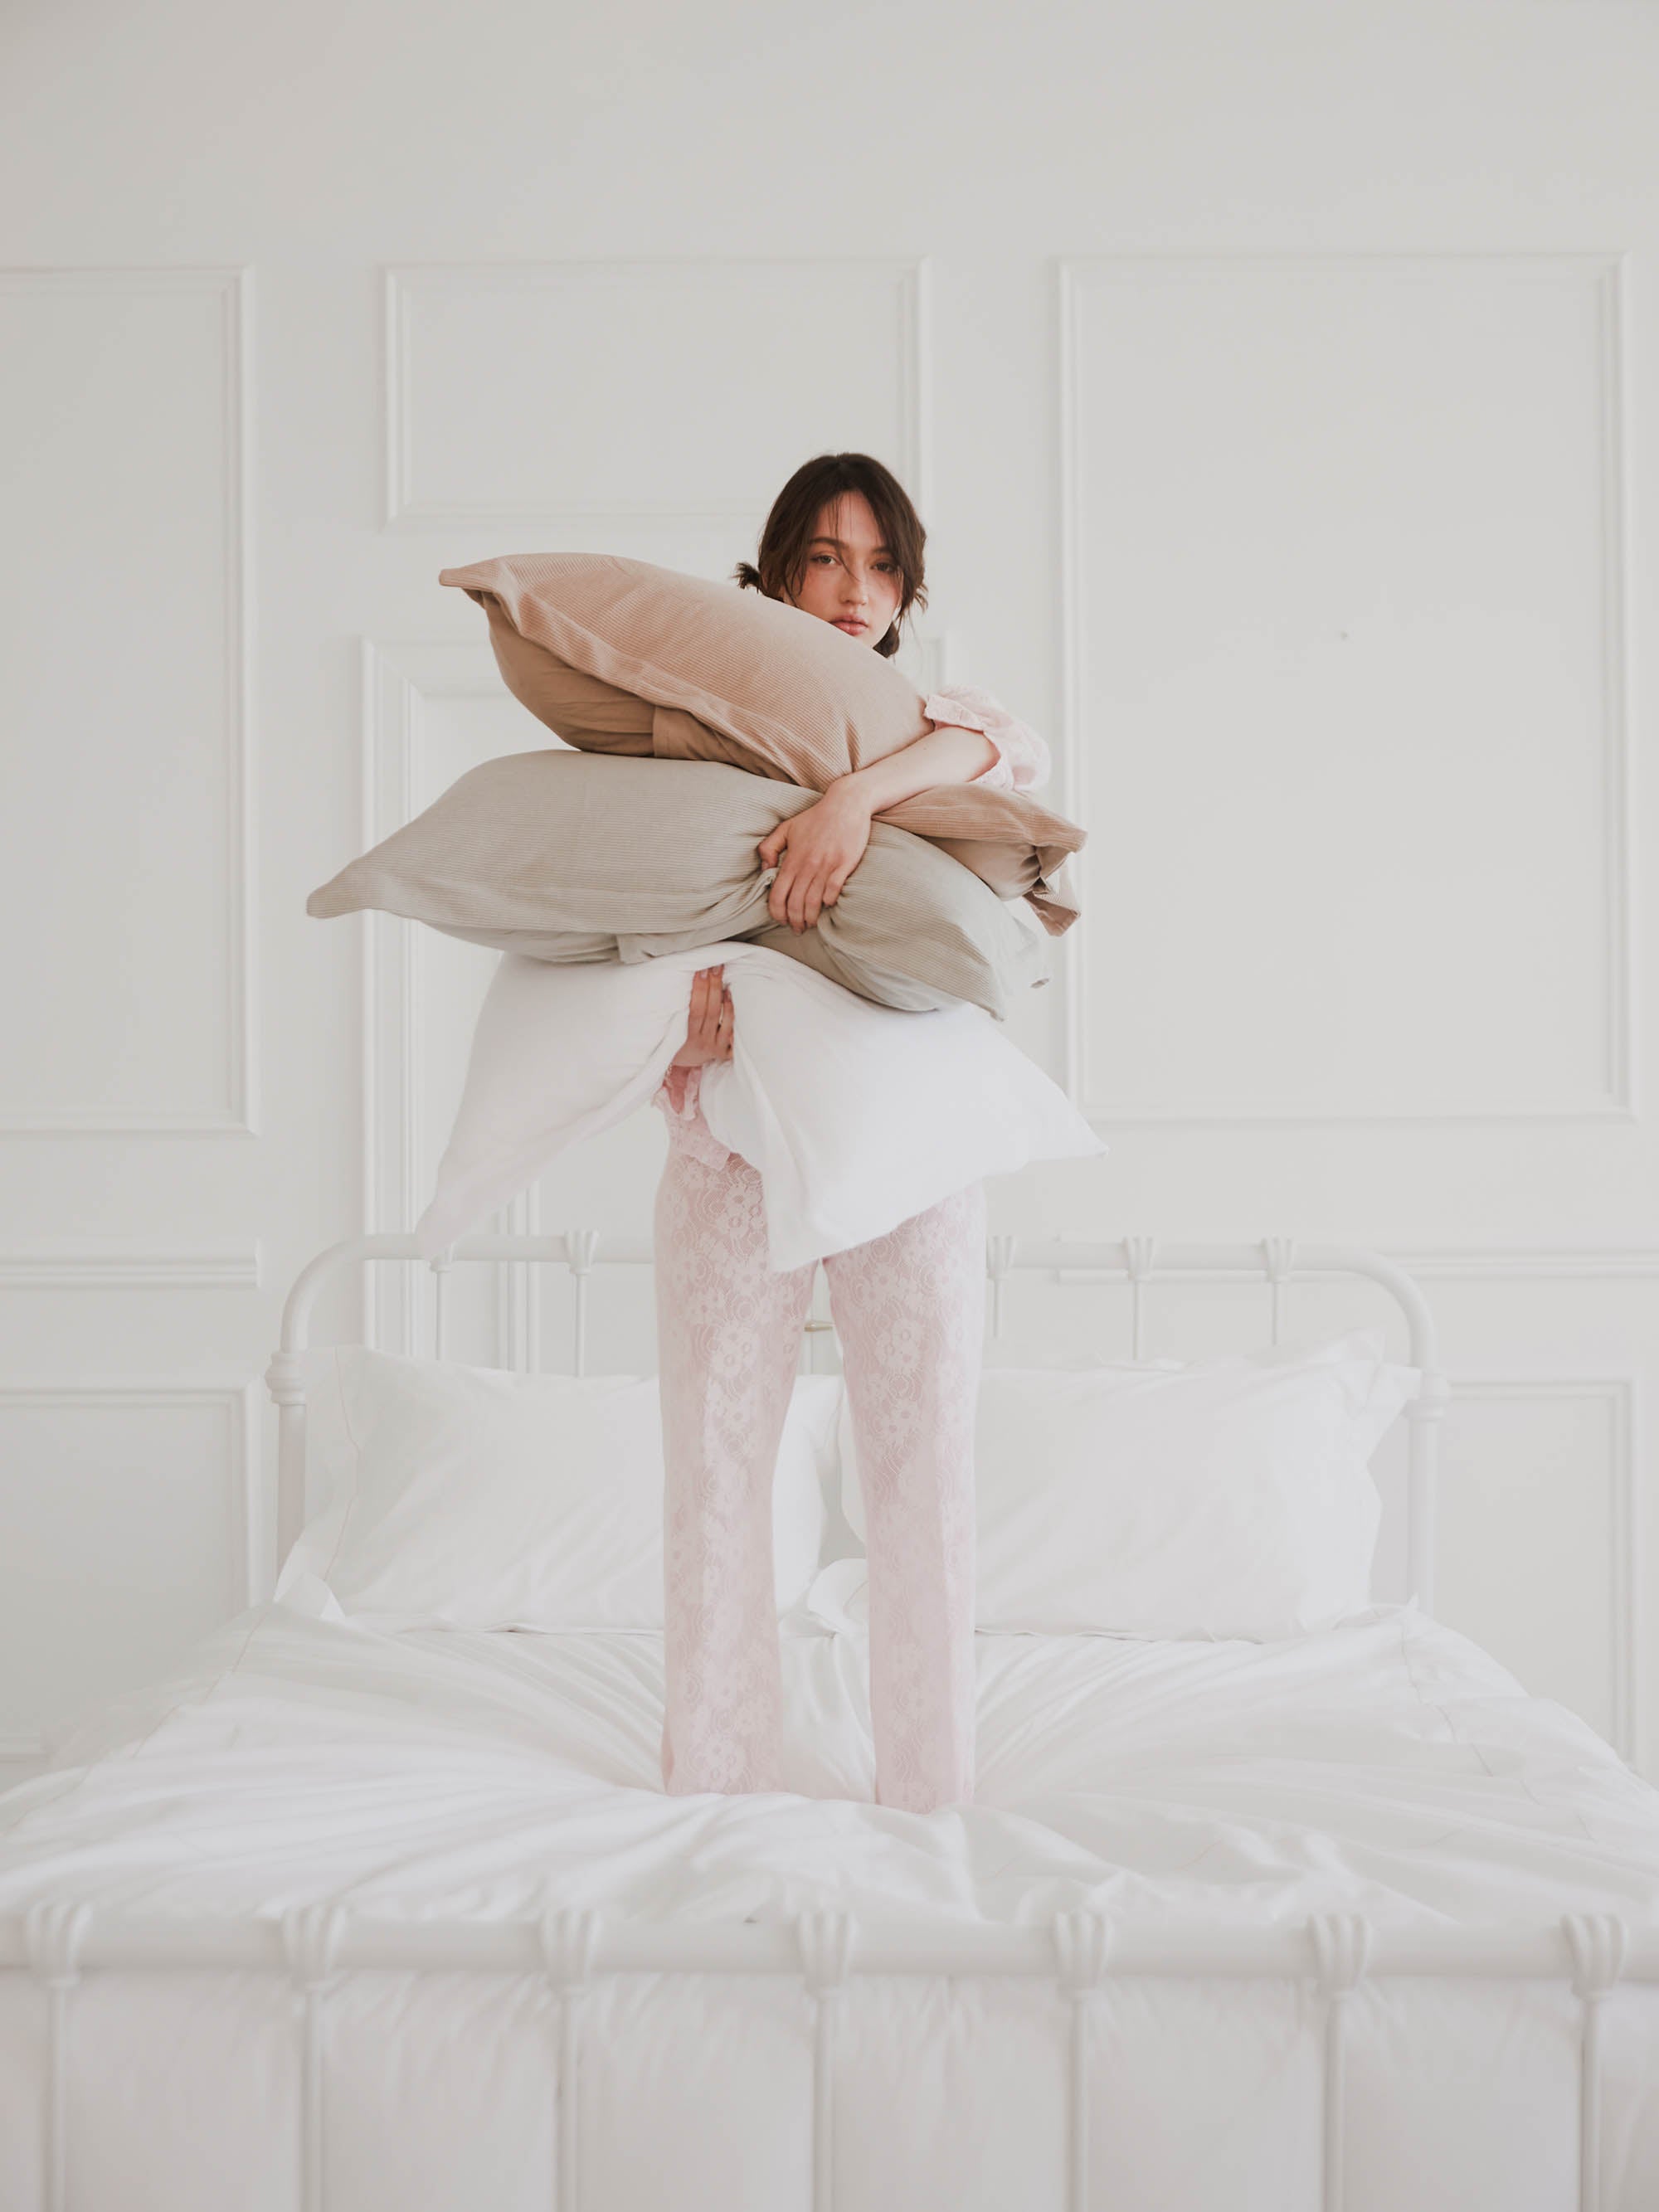 אישה מחזיקה סט כריות עומדת על מיטת ברזל לבנה עם מצעים לבנים 